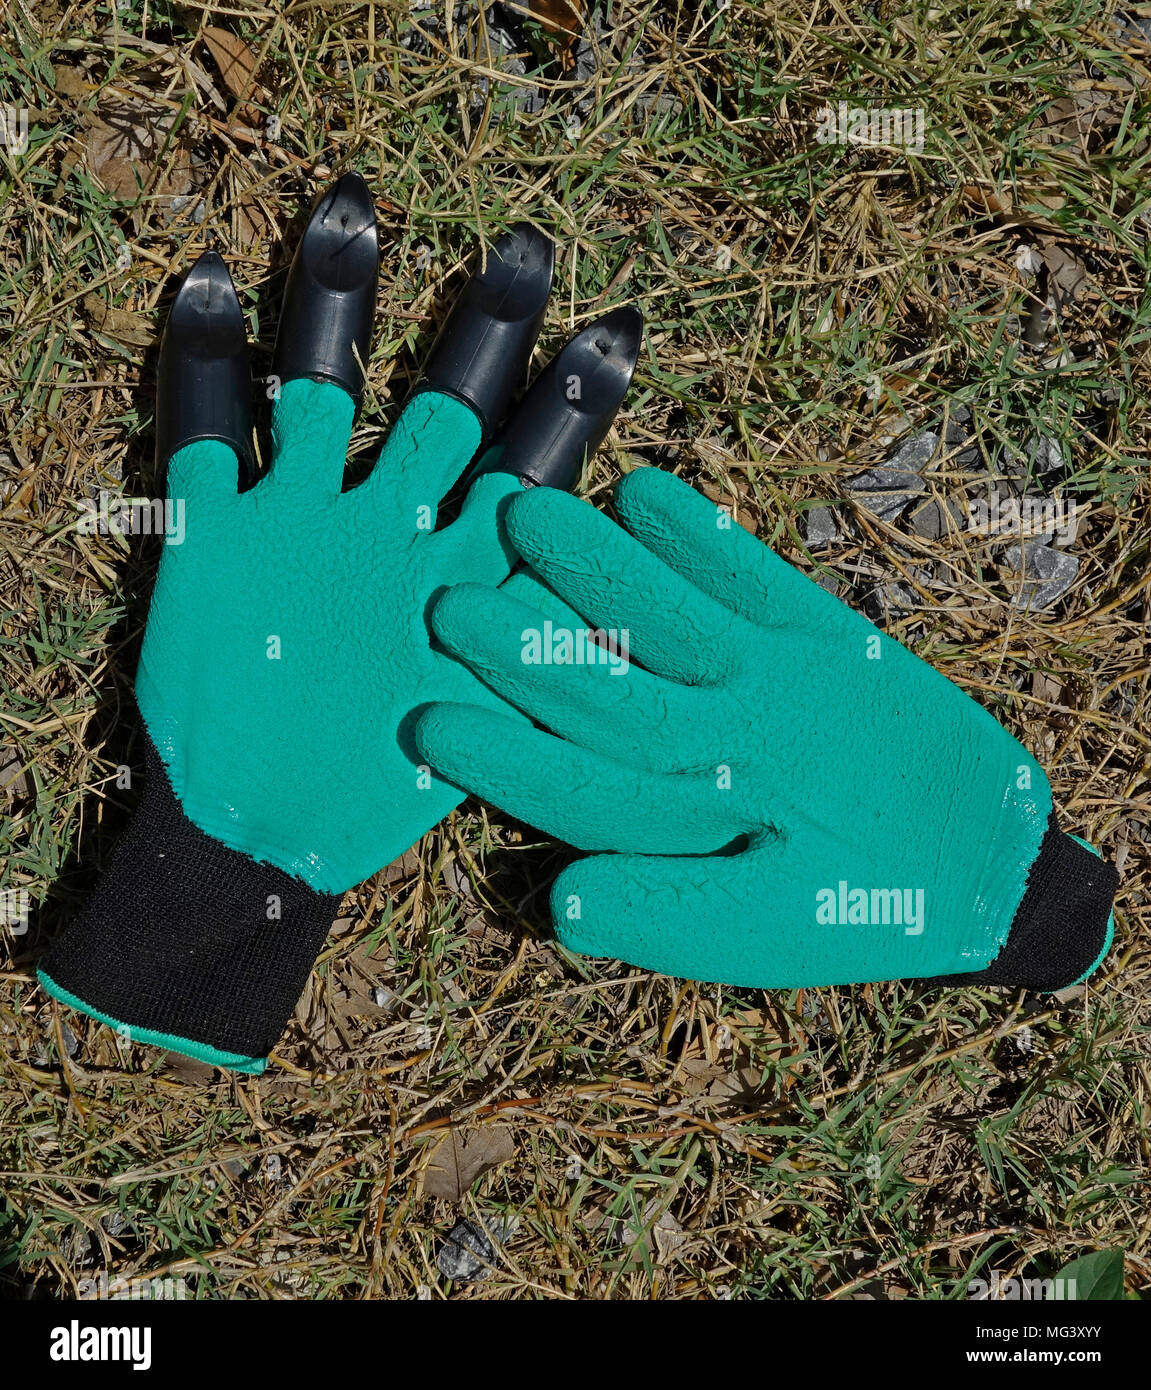 Vert clair Paire de gants de jardin en tissu synthétique élastique noir avec des bracelets et un seul gant équipé avec les doigts Banque D'Images